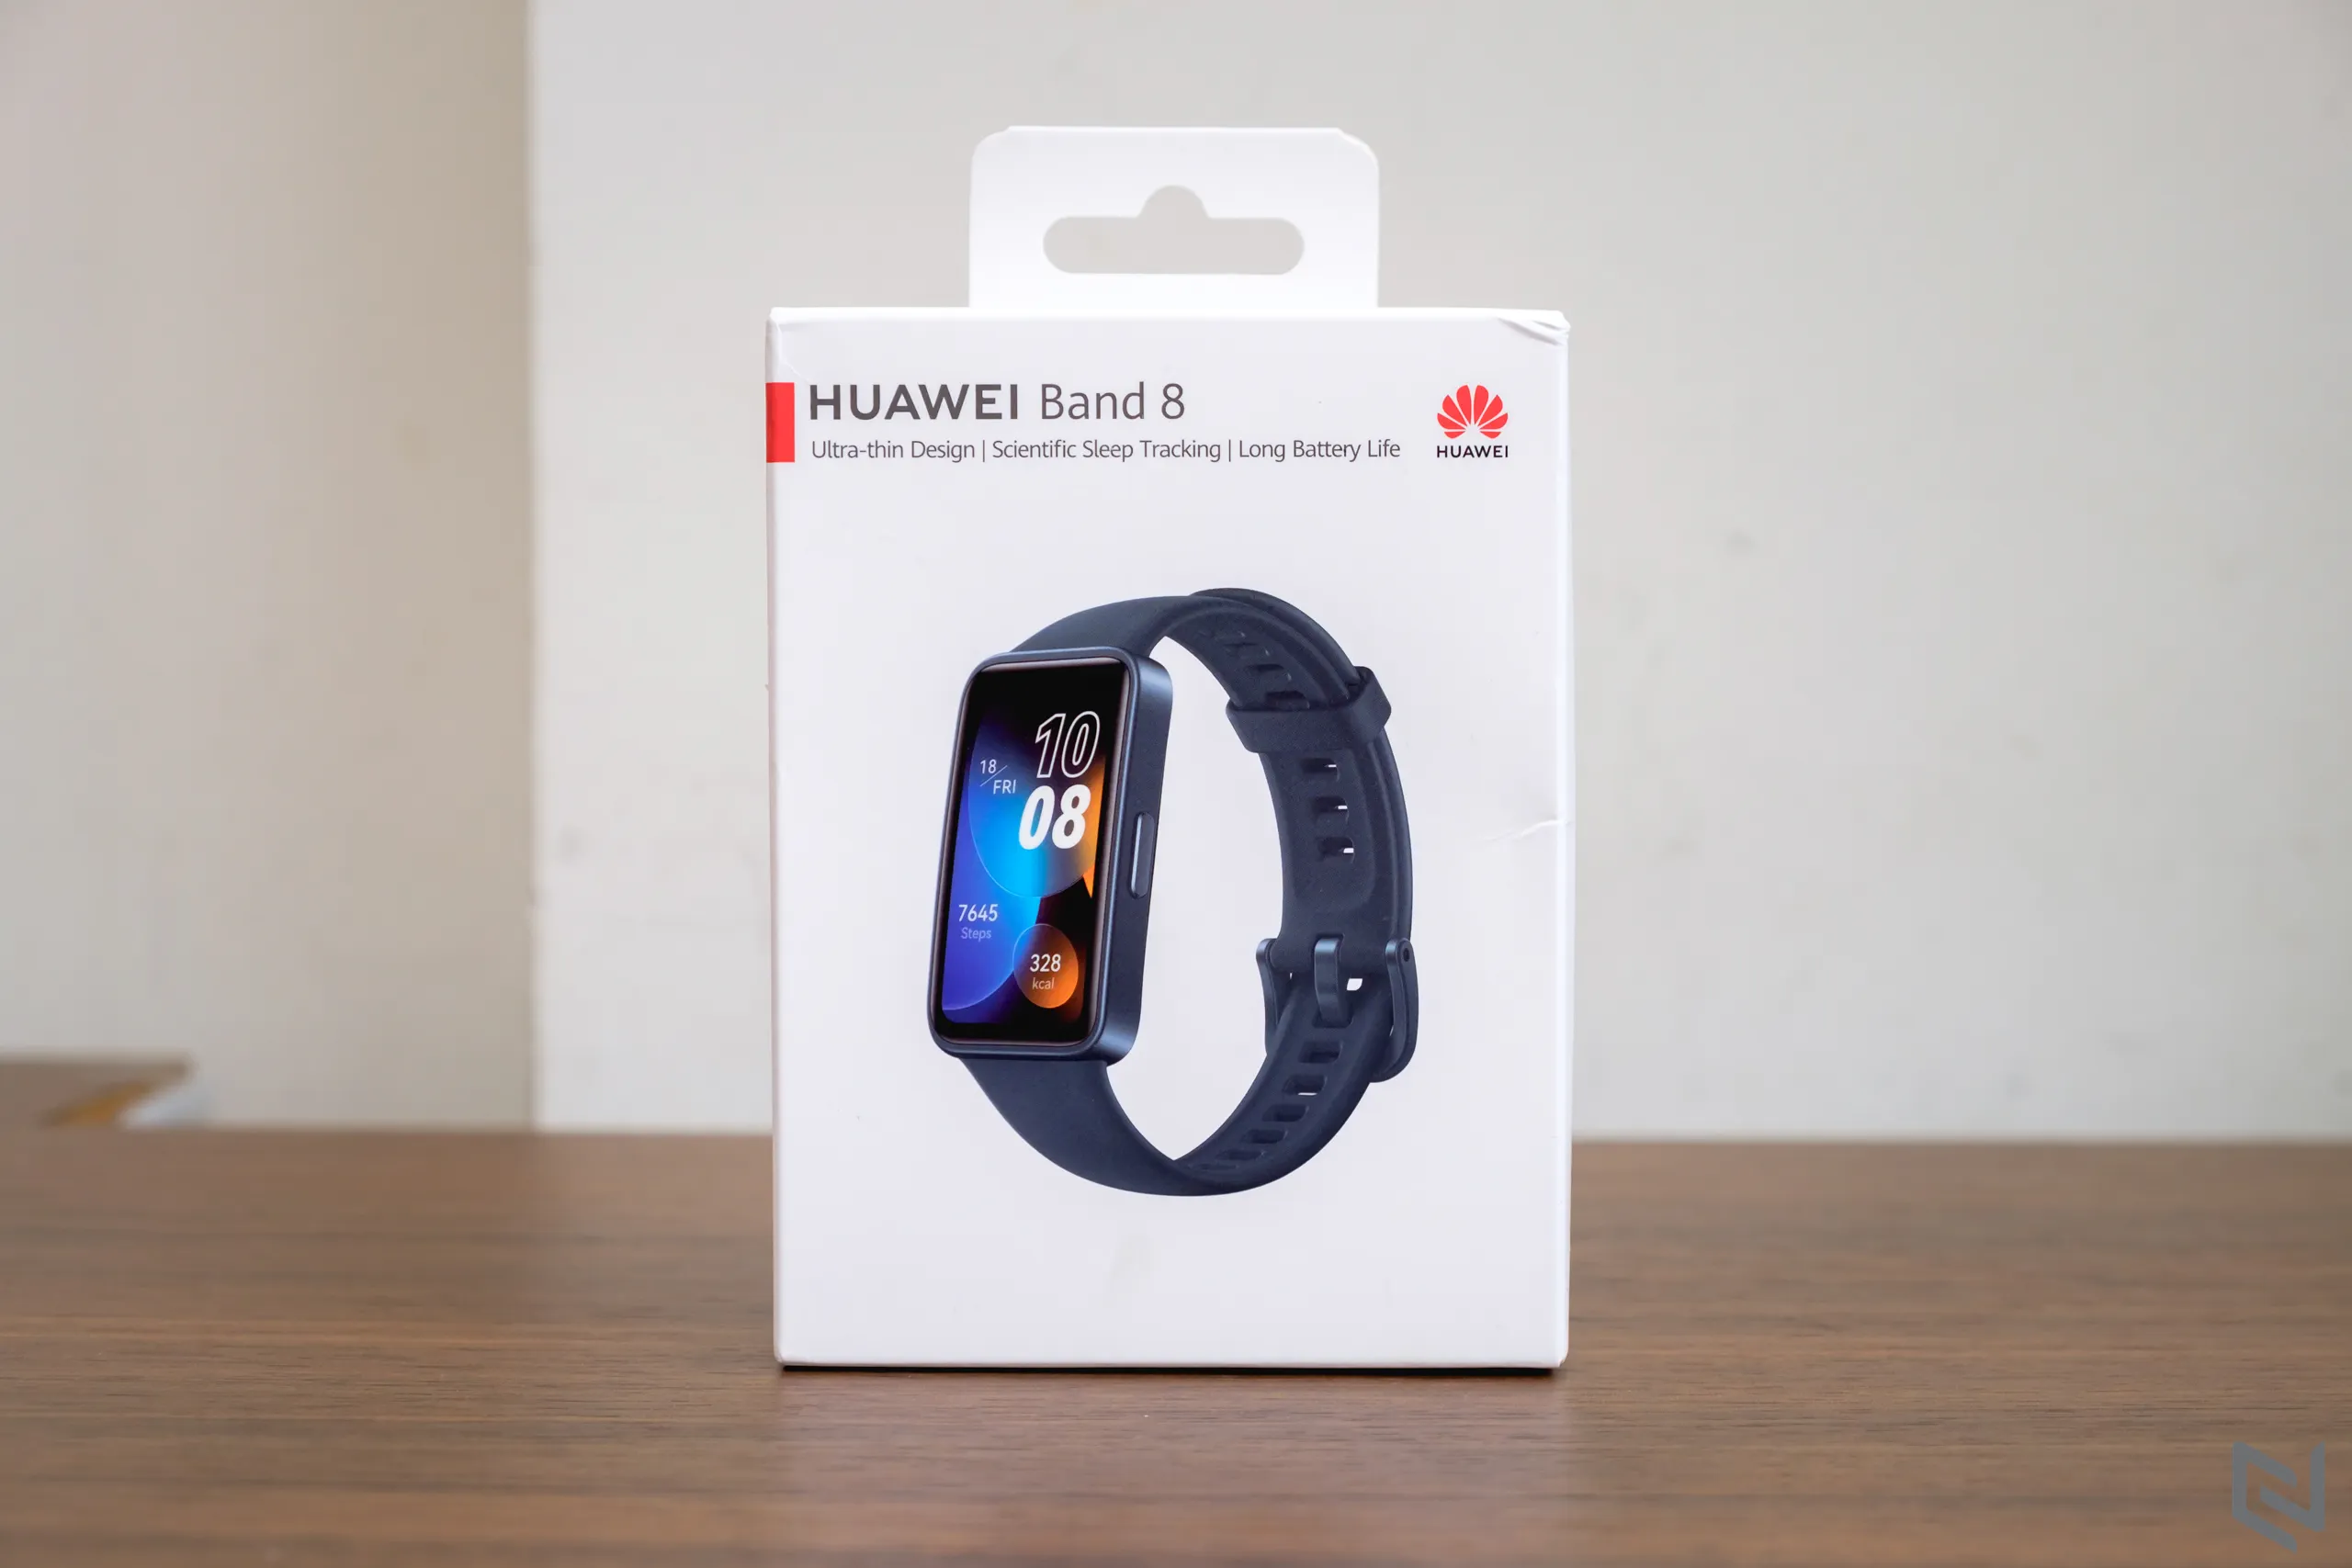 Đánh giá Huawei Band 8 - Nhỏ gọn và thời trang hơn, đầy đủ chức năng theo dõi sức khoẻ